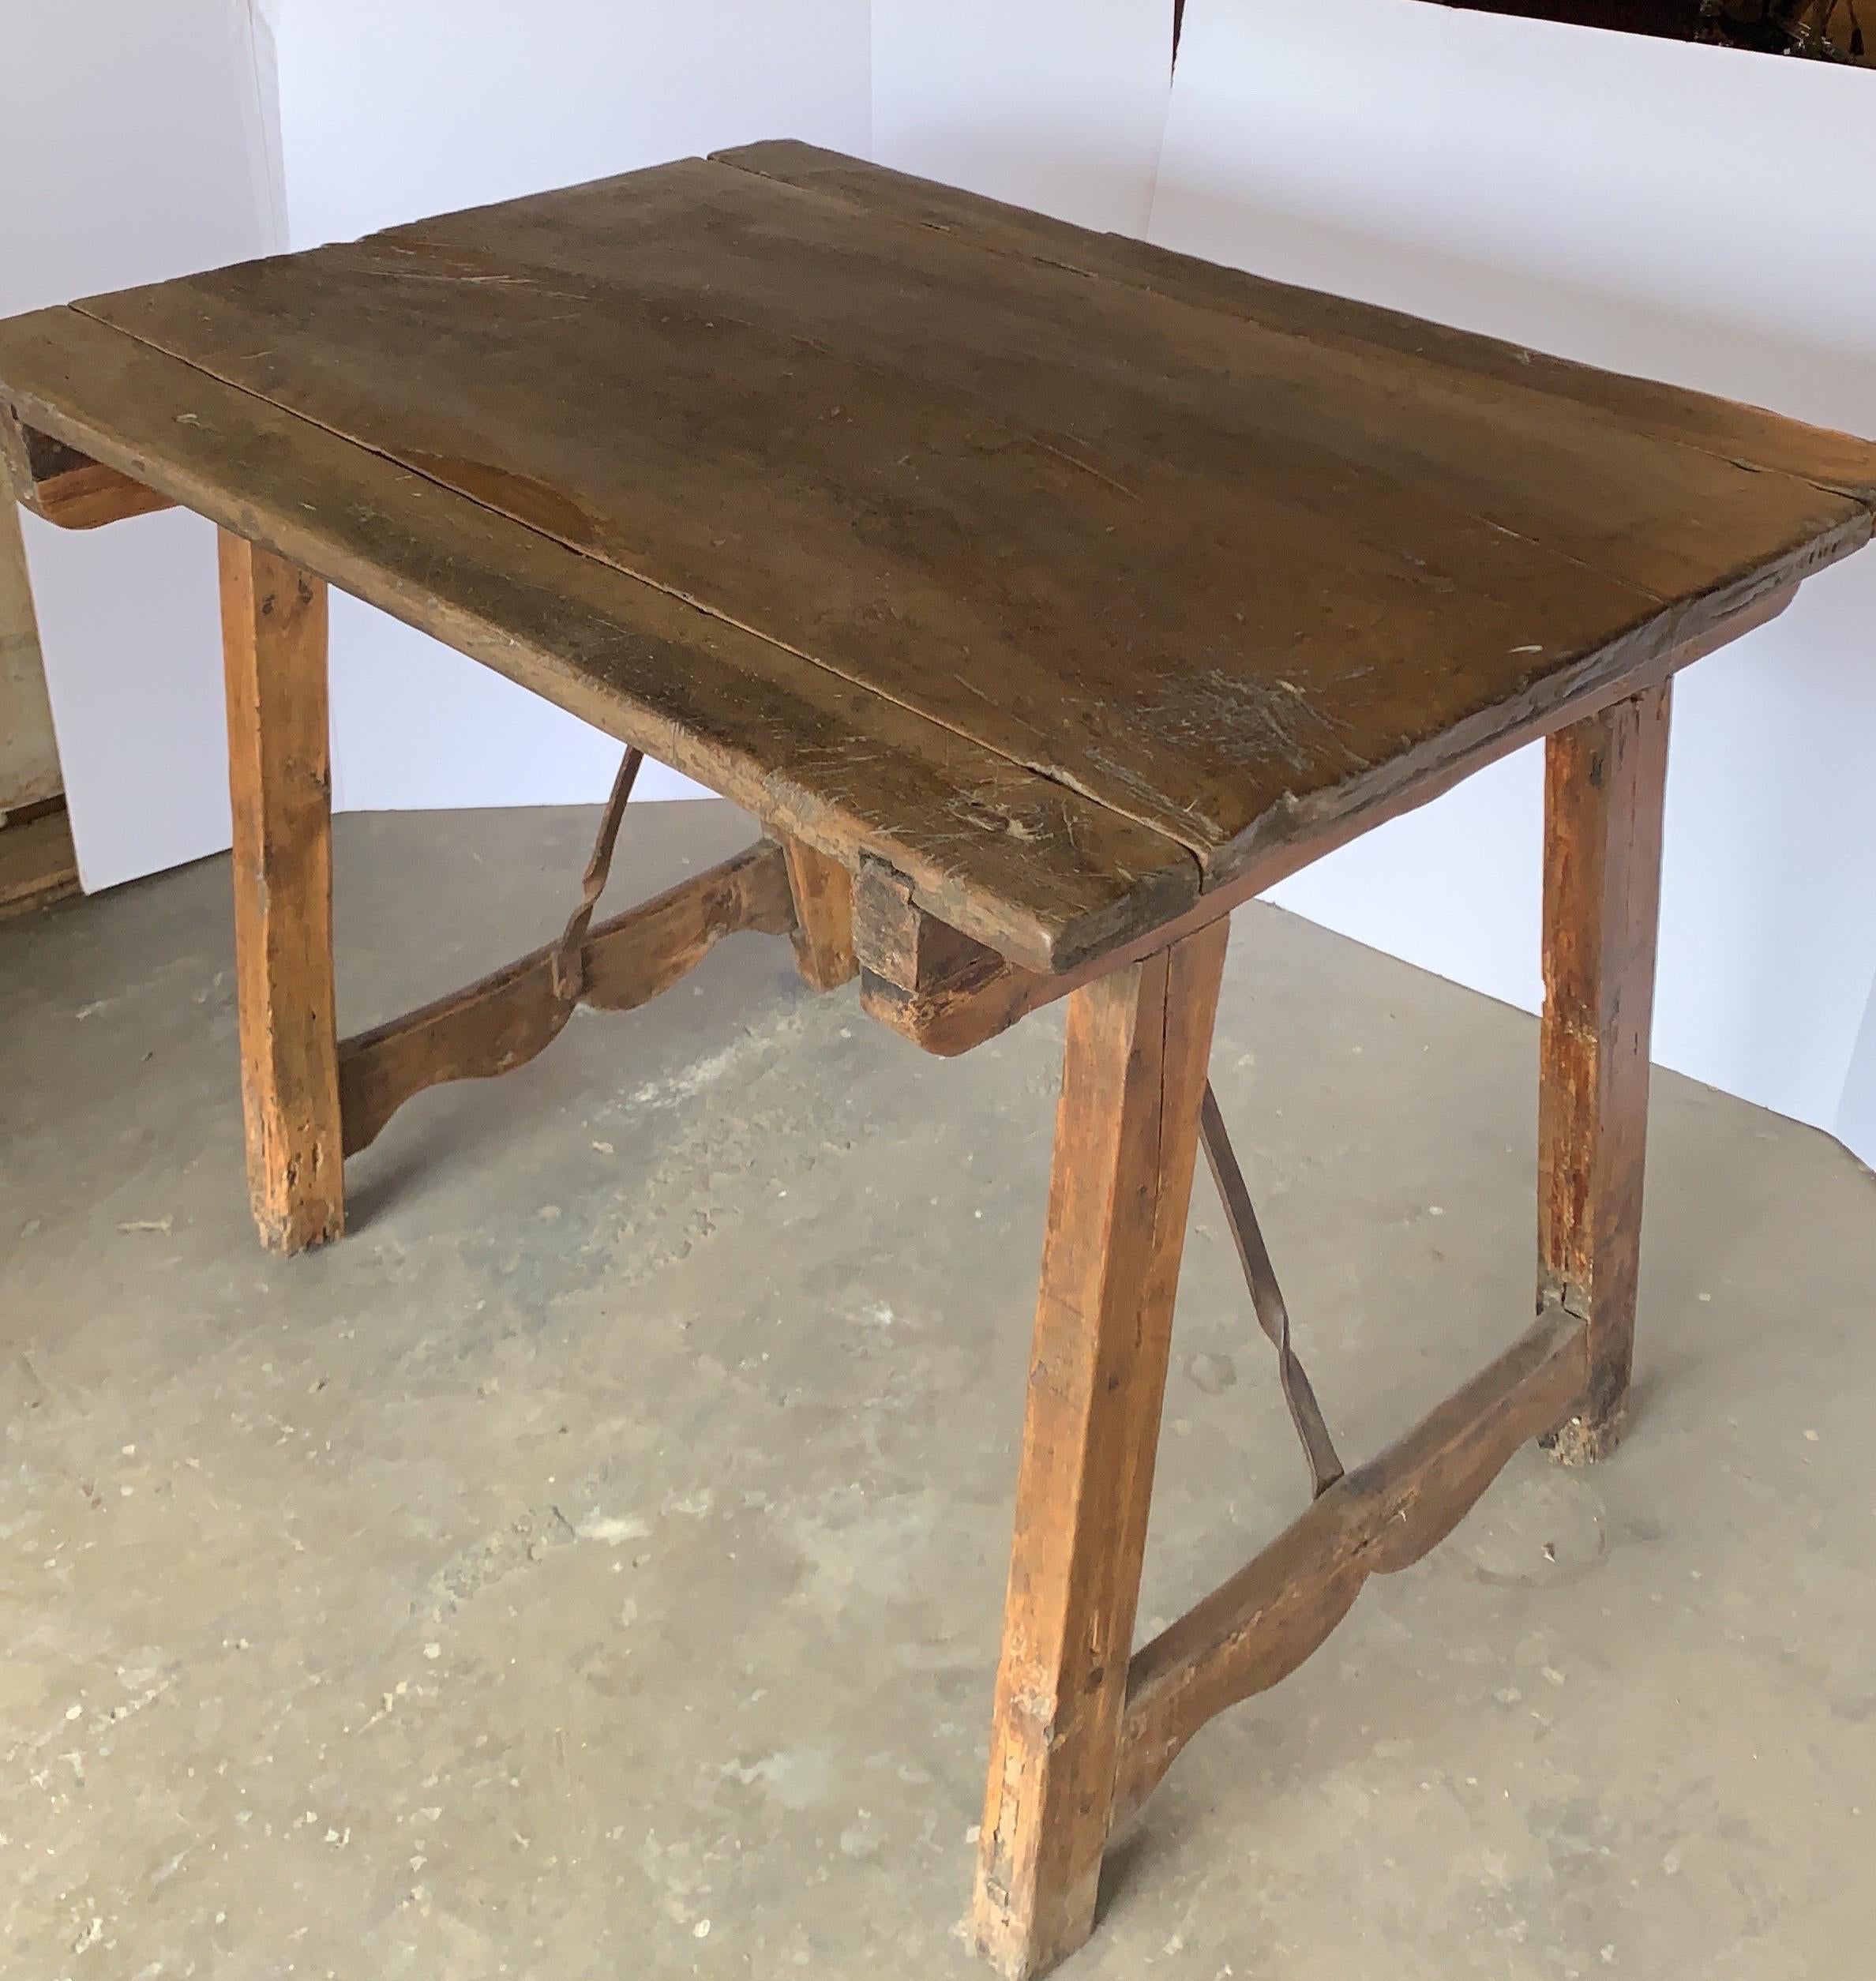 Dies ist eine frühe Nussbaum Spanisch Tabelle, die eine große kleine Schreibtisch oder Beistelltisch sein könnte. Es hat eine warme honigfarbene Patina und seine Stabilität ist gut. Auf den Fotos können Sie die Schwalbenschwanzkonstruktion